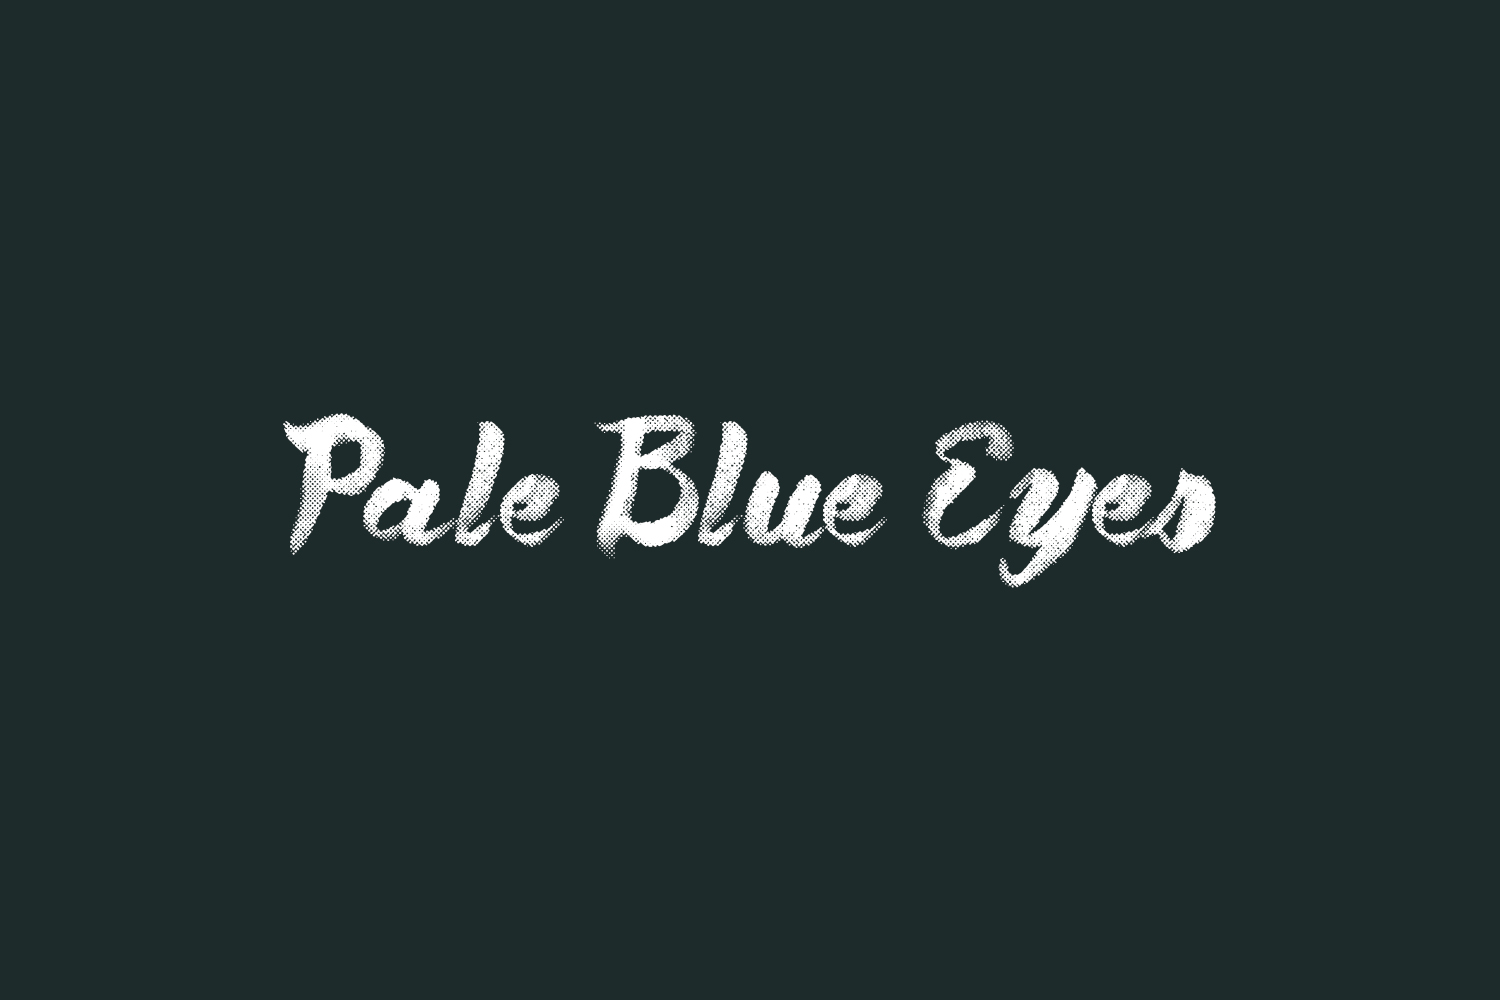 Pale Blue Eyes Free Font